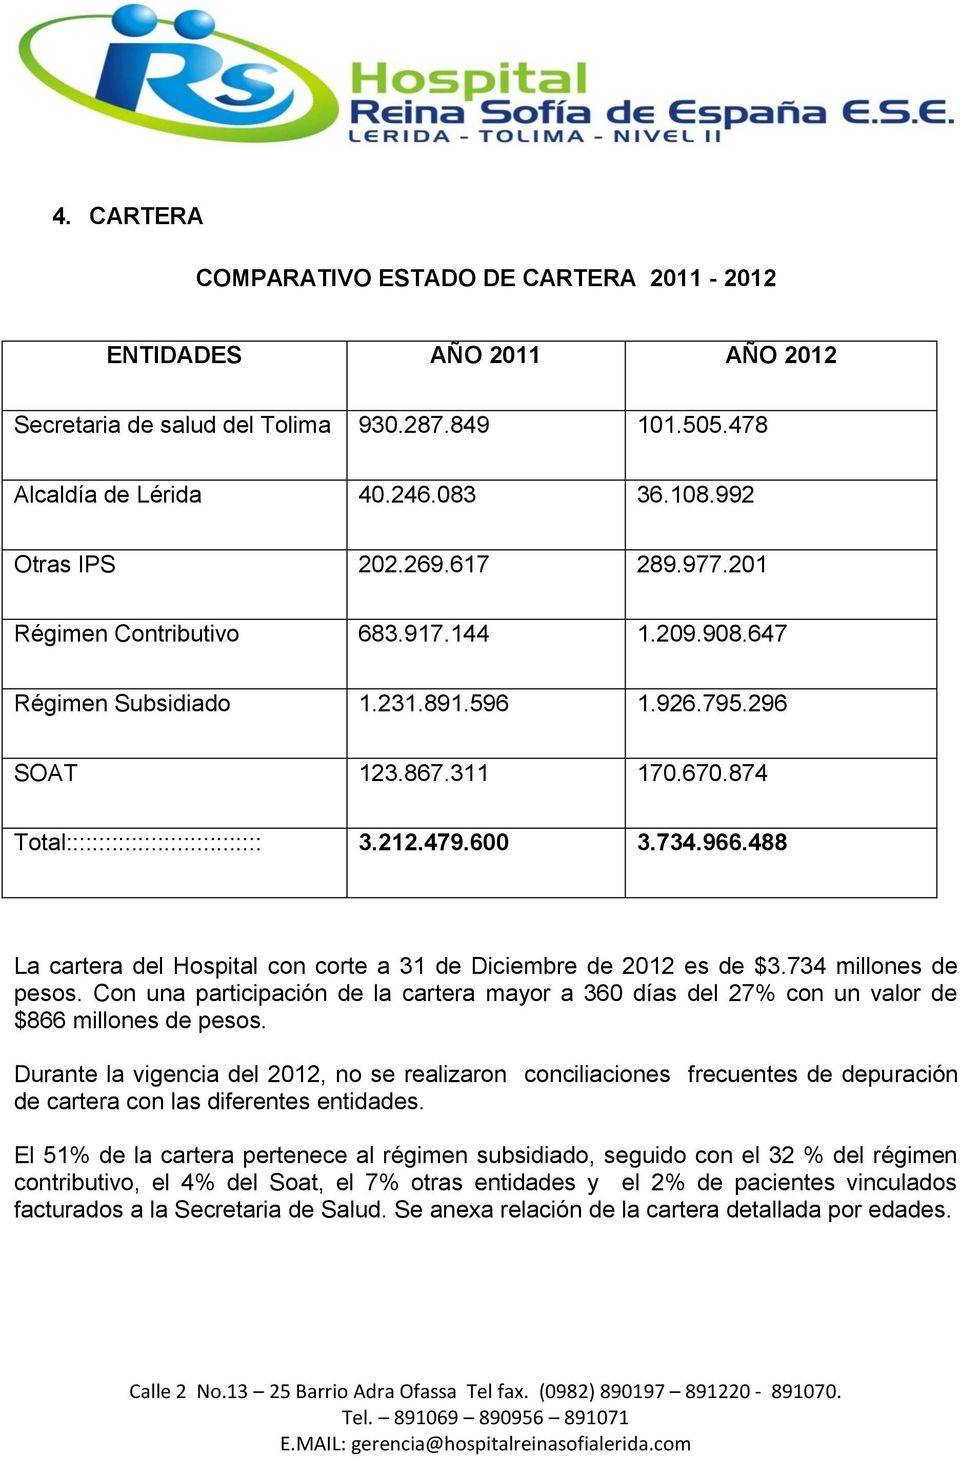 488 La cartera del Hospital con corte a 31 de Diciembre de 2012 es de $3.734 millones de pesos. Con una participación de la cartera mayor a 360 días del 27% con un valor de $866 millones de pesos.